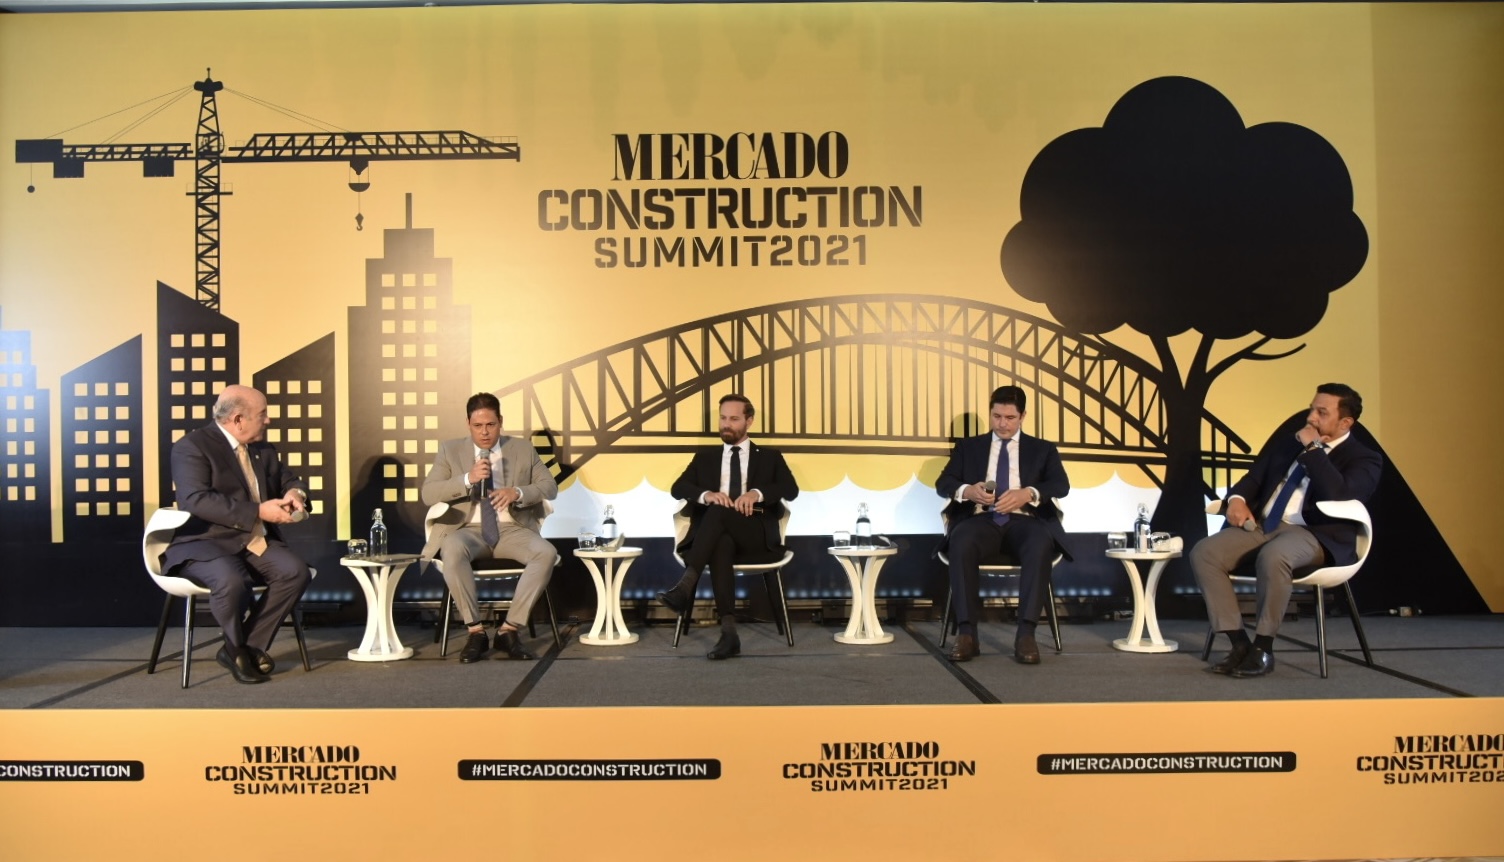 Mercado Construction Summit 2021